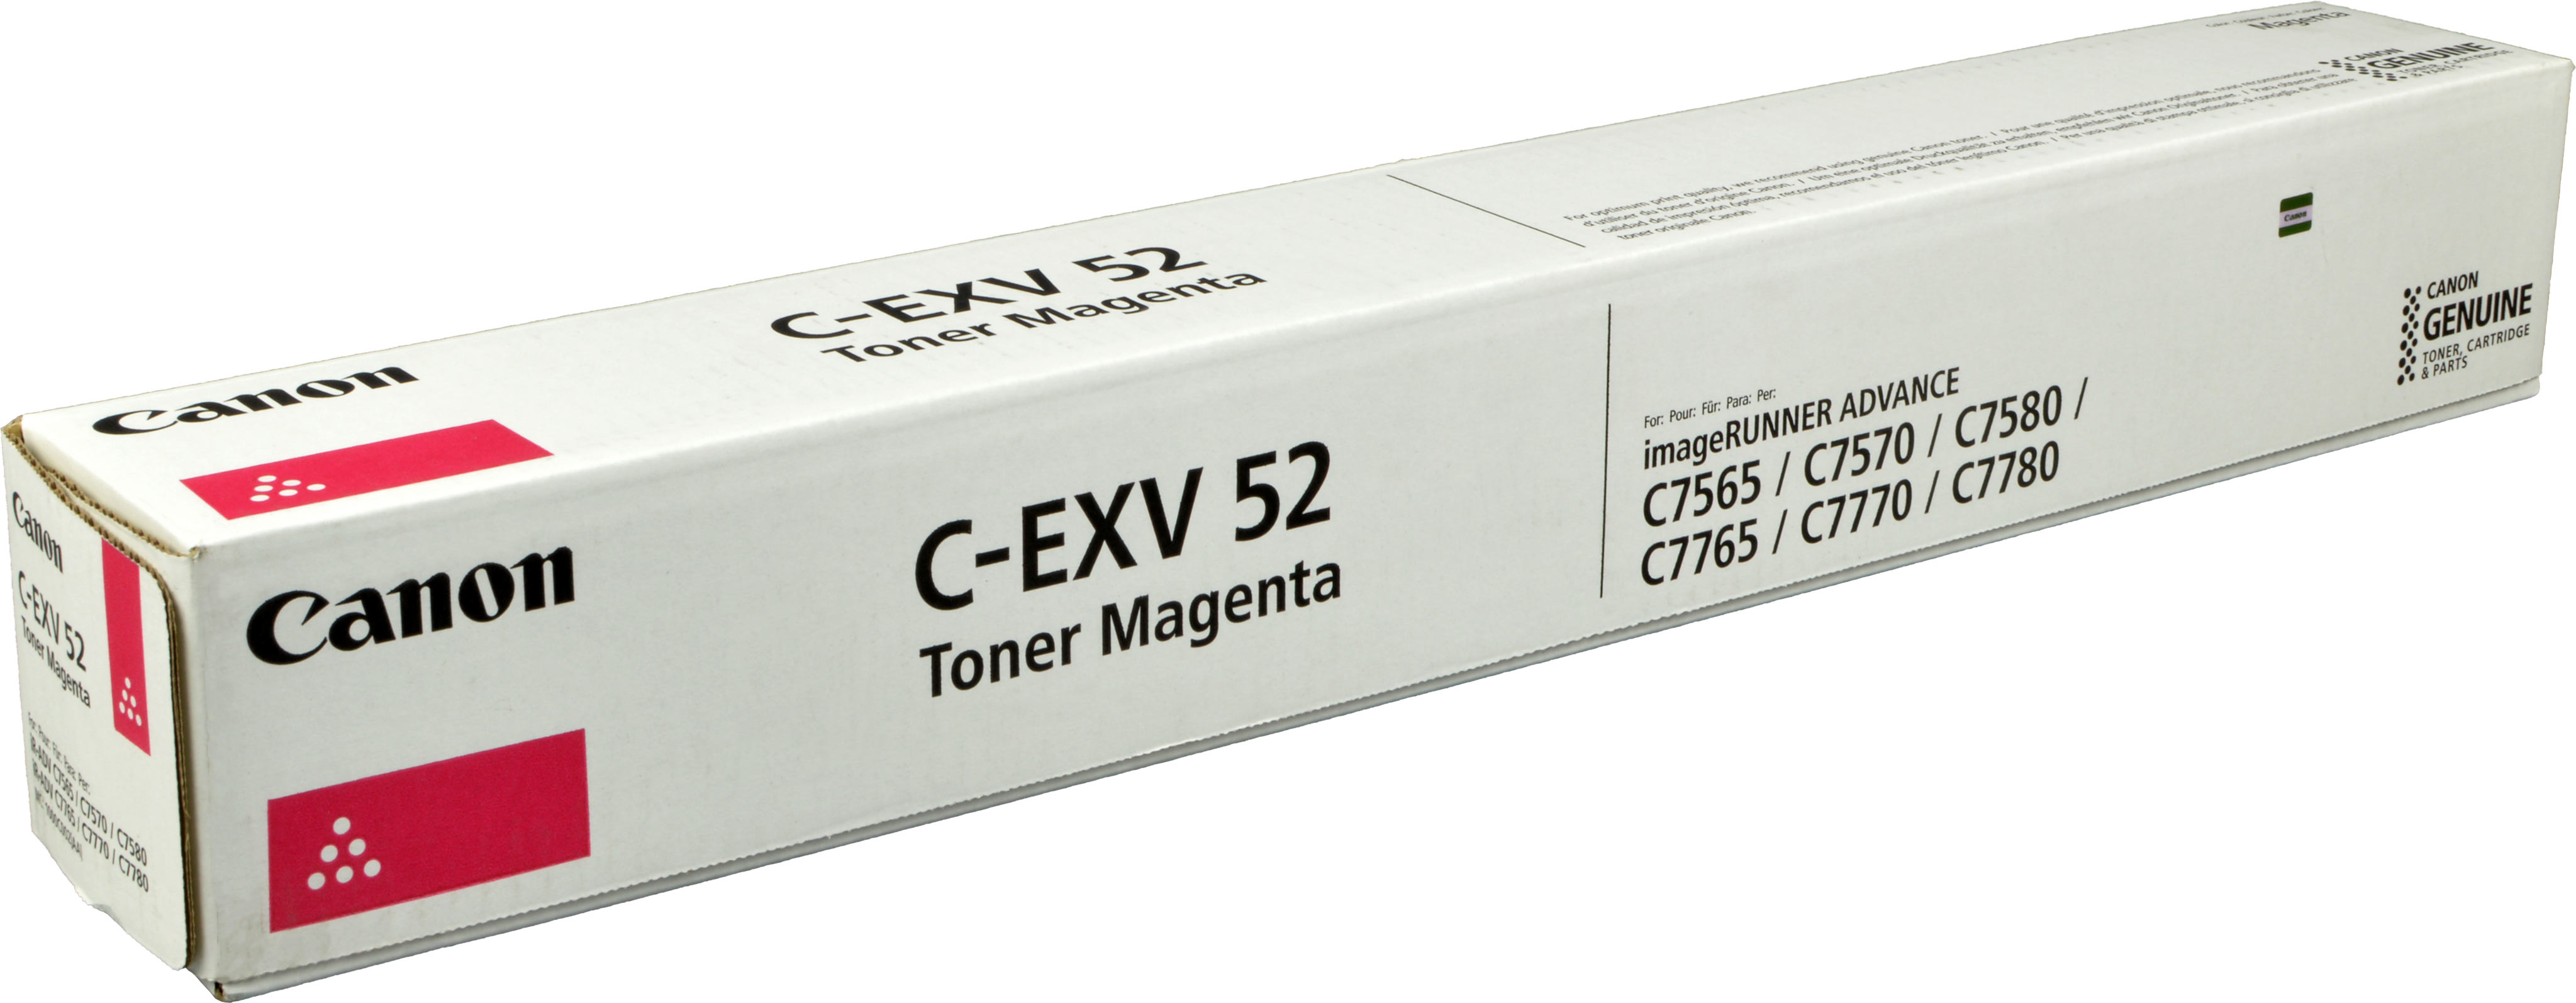 Canon Toner 1000C002  C-EXV52  magenta